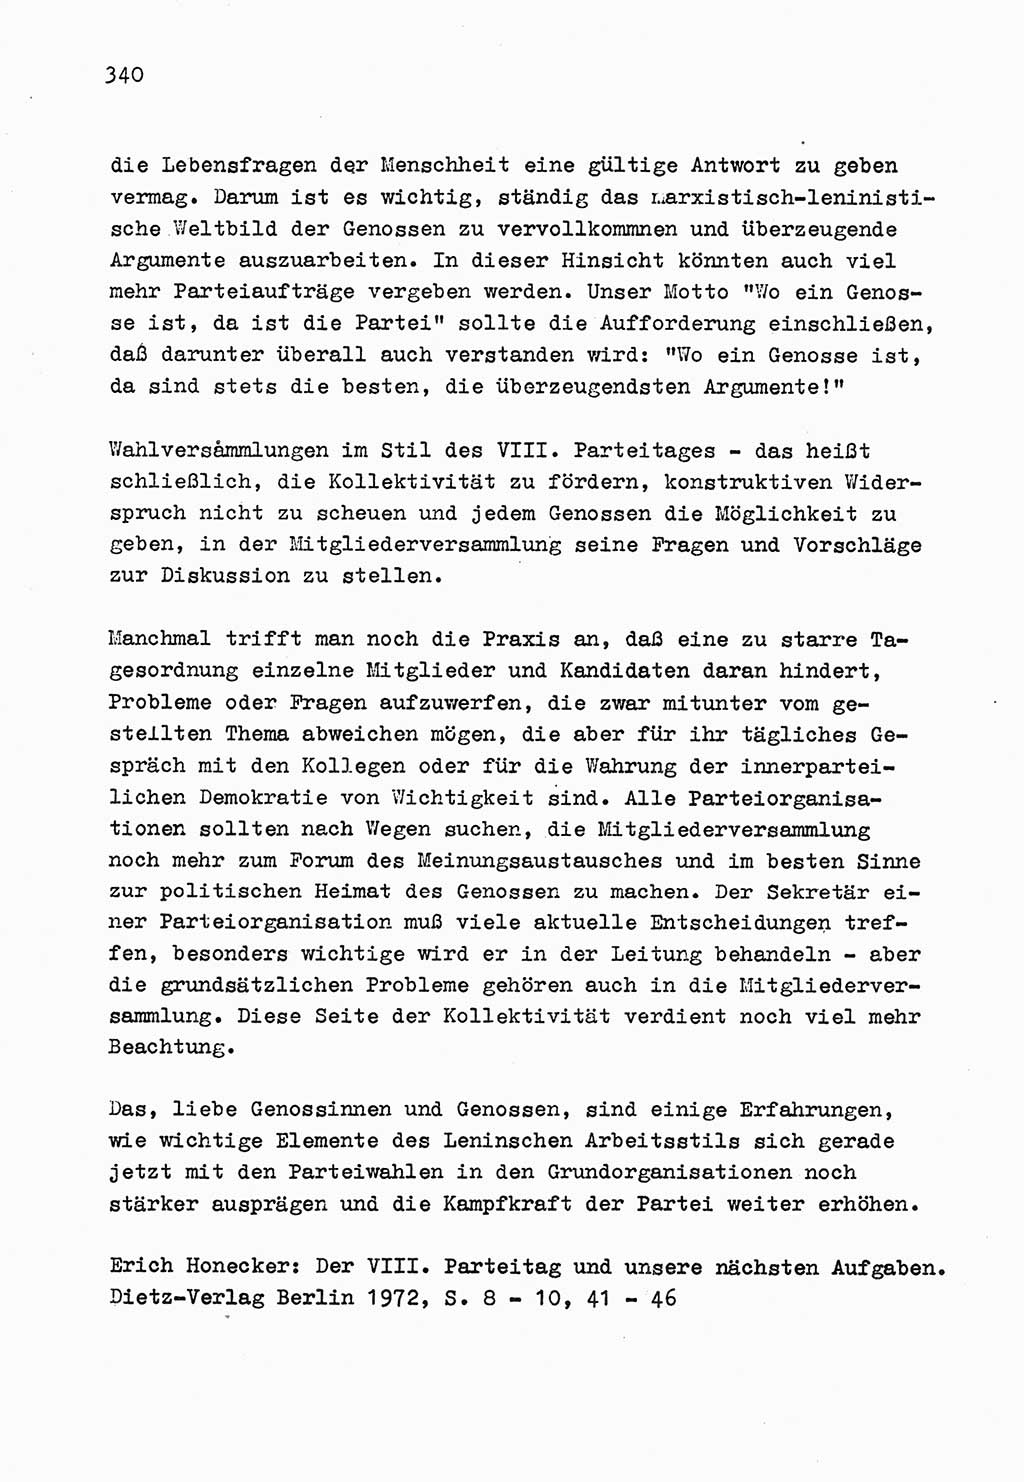 Zu Fragen der Parteiarbeit [Sozialistische Einheitspartei Deutschlands (SED) Deutsche Demokratische Republik (DDR)] 1979, Seite 340 (Fr. PA SED DDR 1979, S. 340)